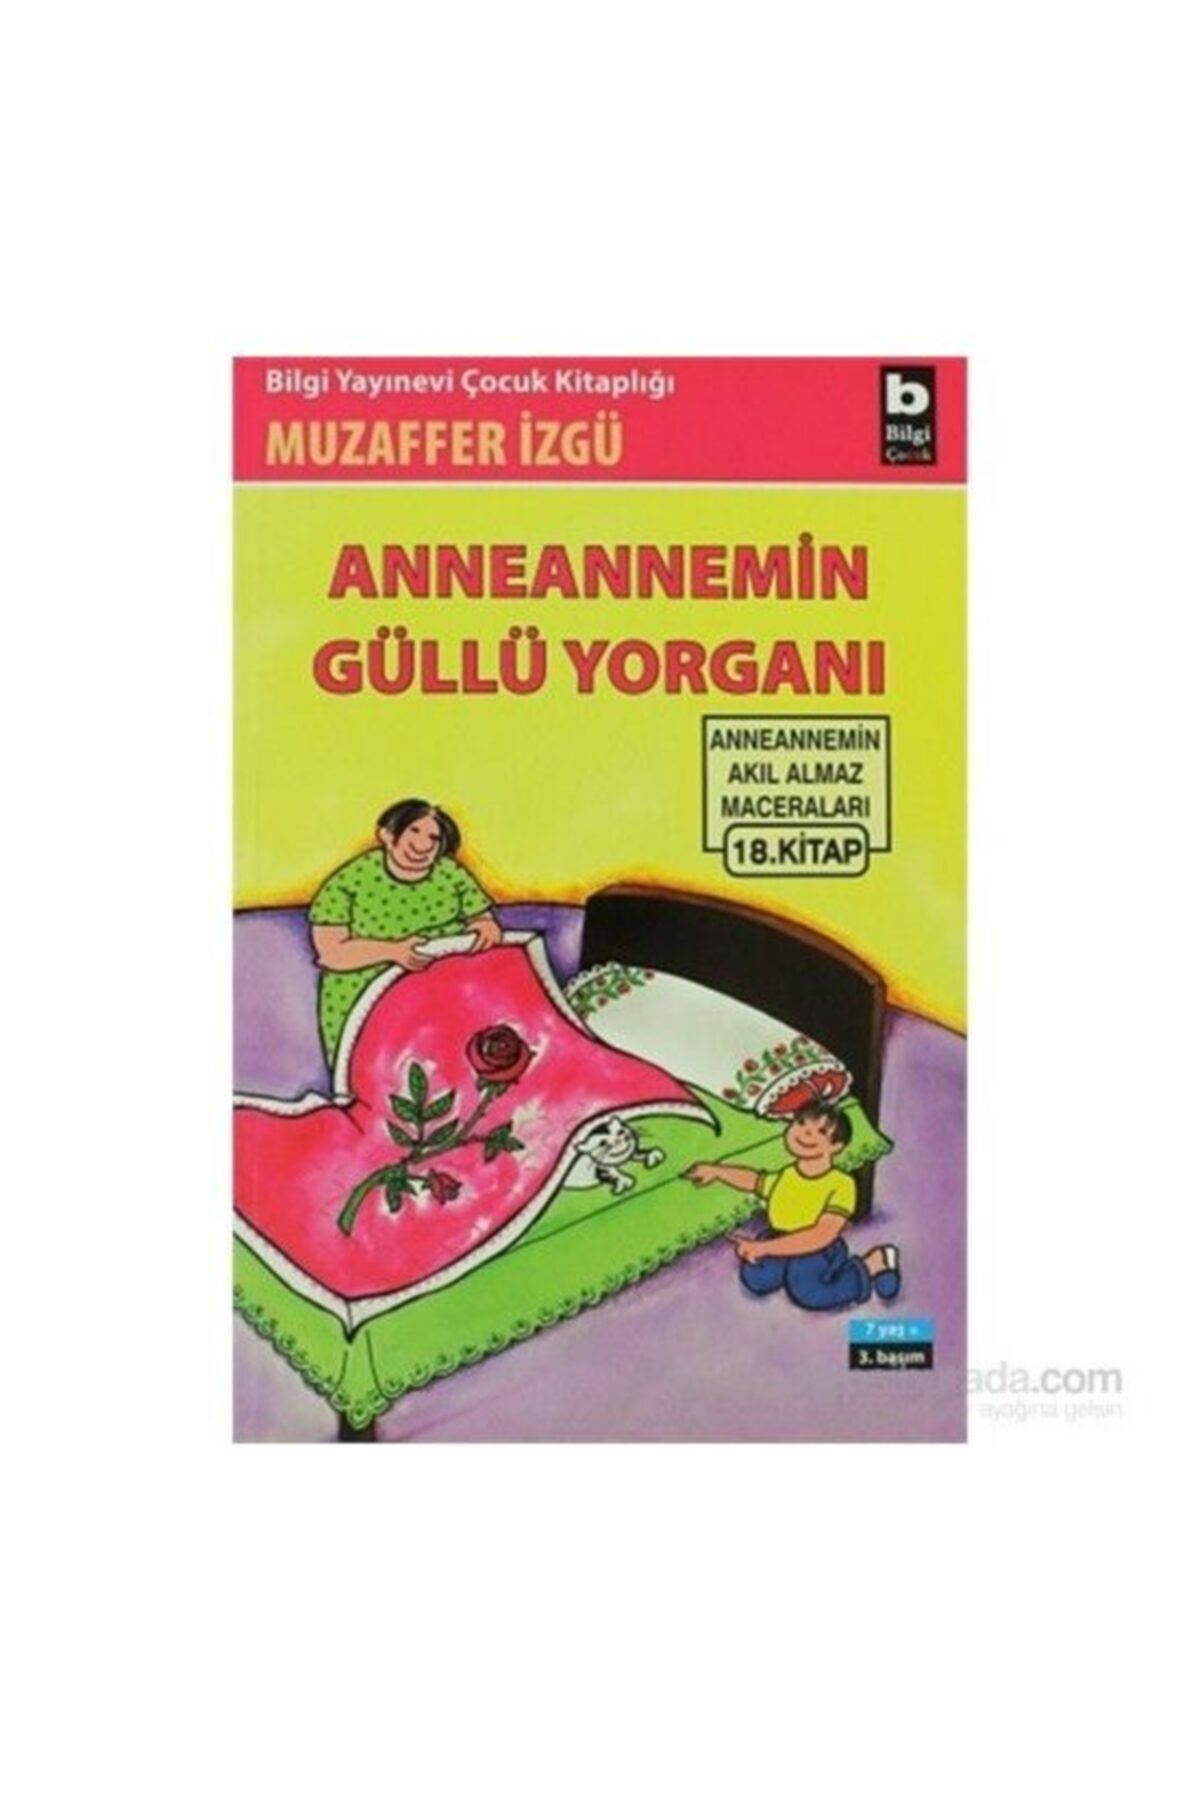 Bilgi Yayınları Anneannemin Güllü Yorganı | Muzaffer Izgü |